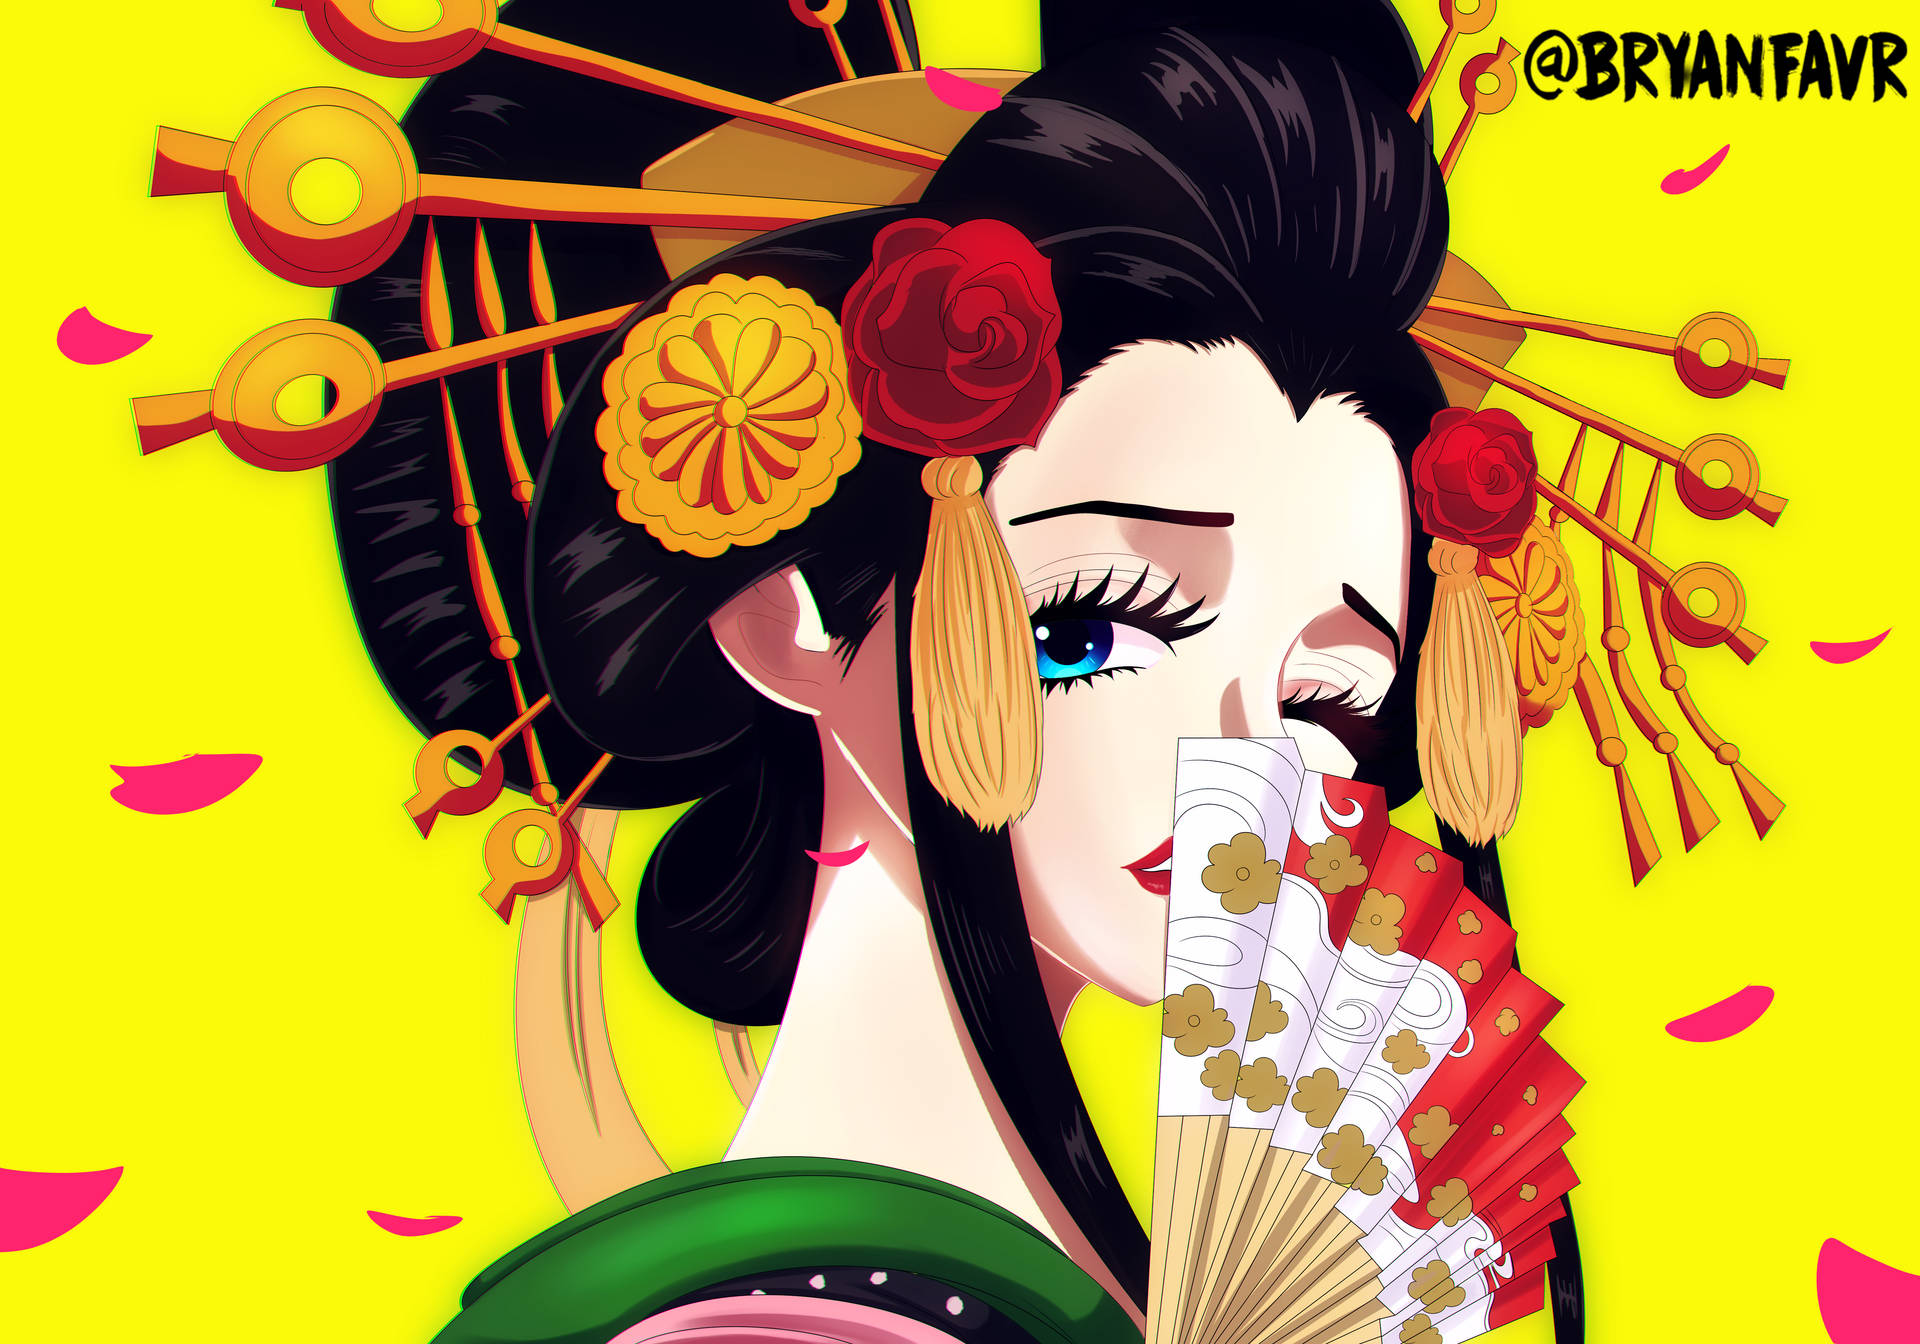 Nicorobin Från One Piece I Wano-stil, I 4k-upplösning Och Med Ett Geisha-fanart-tema. Wallpaper